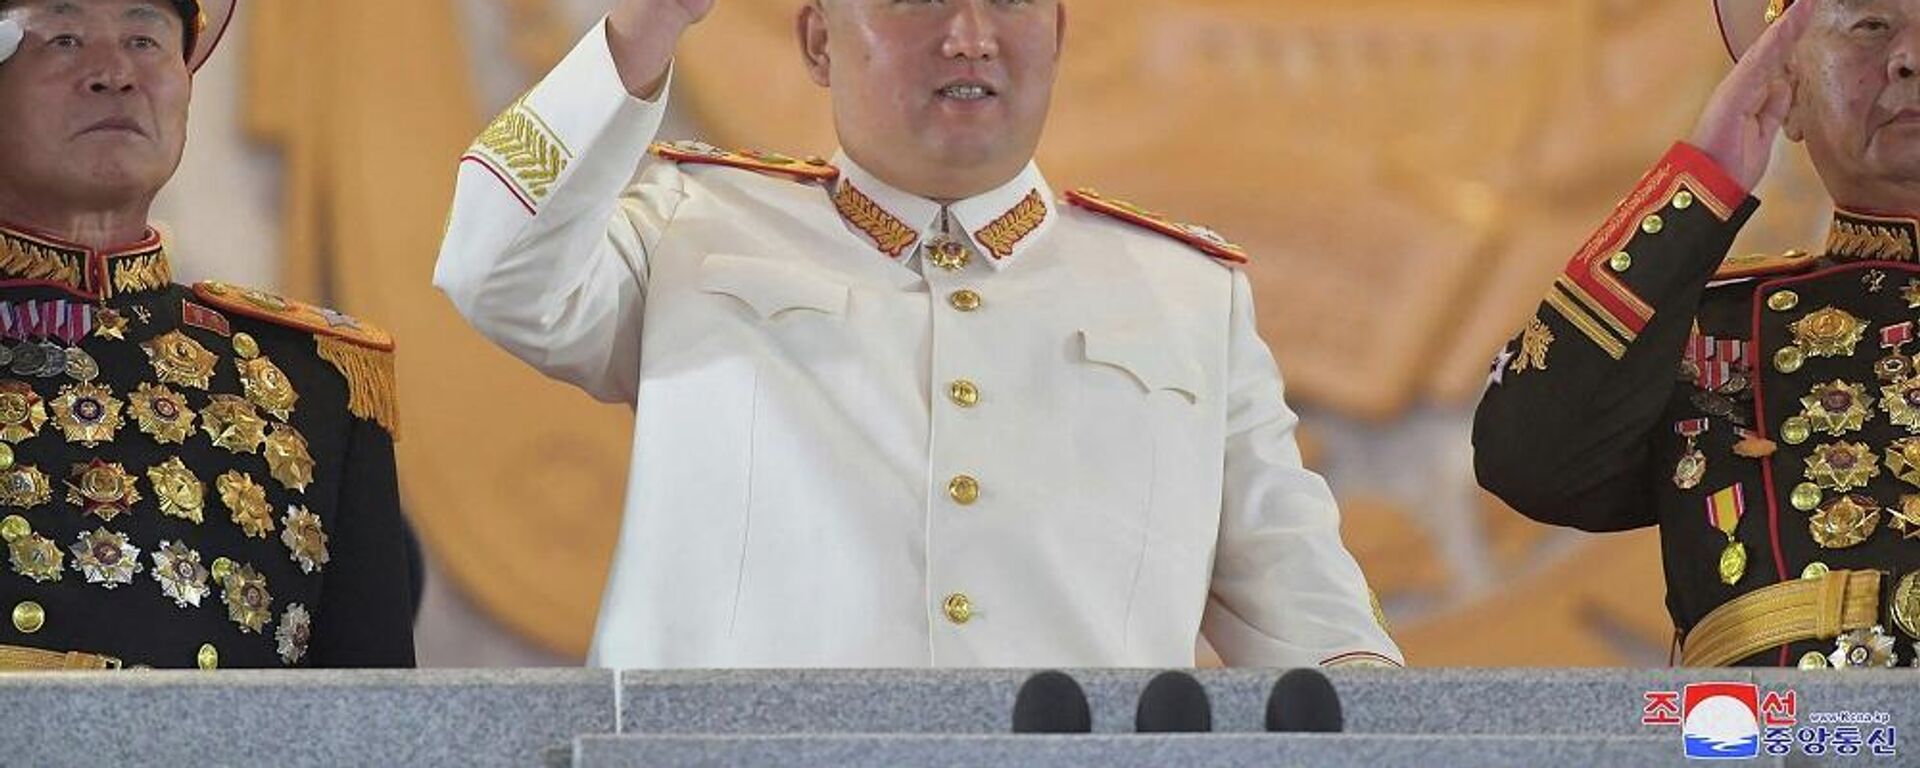 زعيم كوريا الشمالية، كيم جونغ أون، يشارك في عرض عسكري كبير أقيم في ساحة كيم إيل سونغ في بيونغ يانغ، 26 نيسان/ أبريل 2022 - سبوتنيك عربي, 1920, 19.10.2022